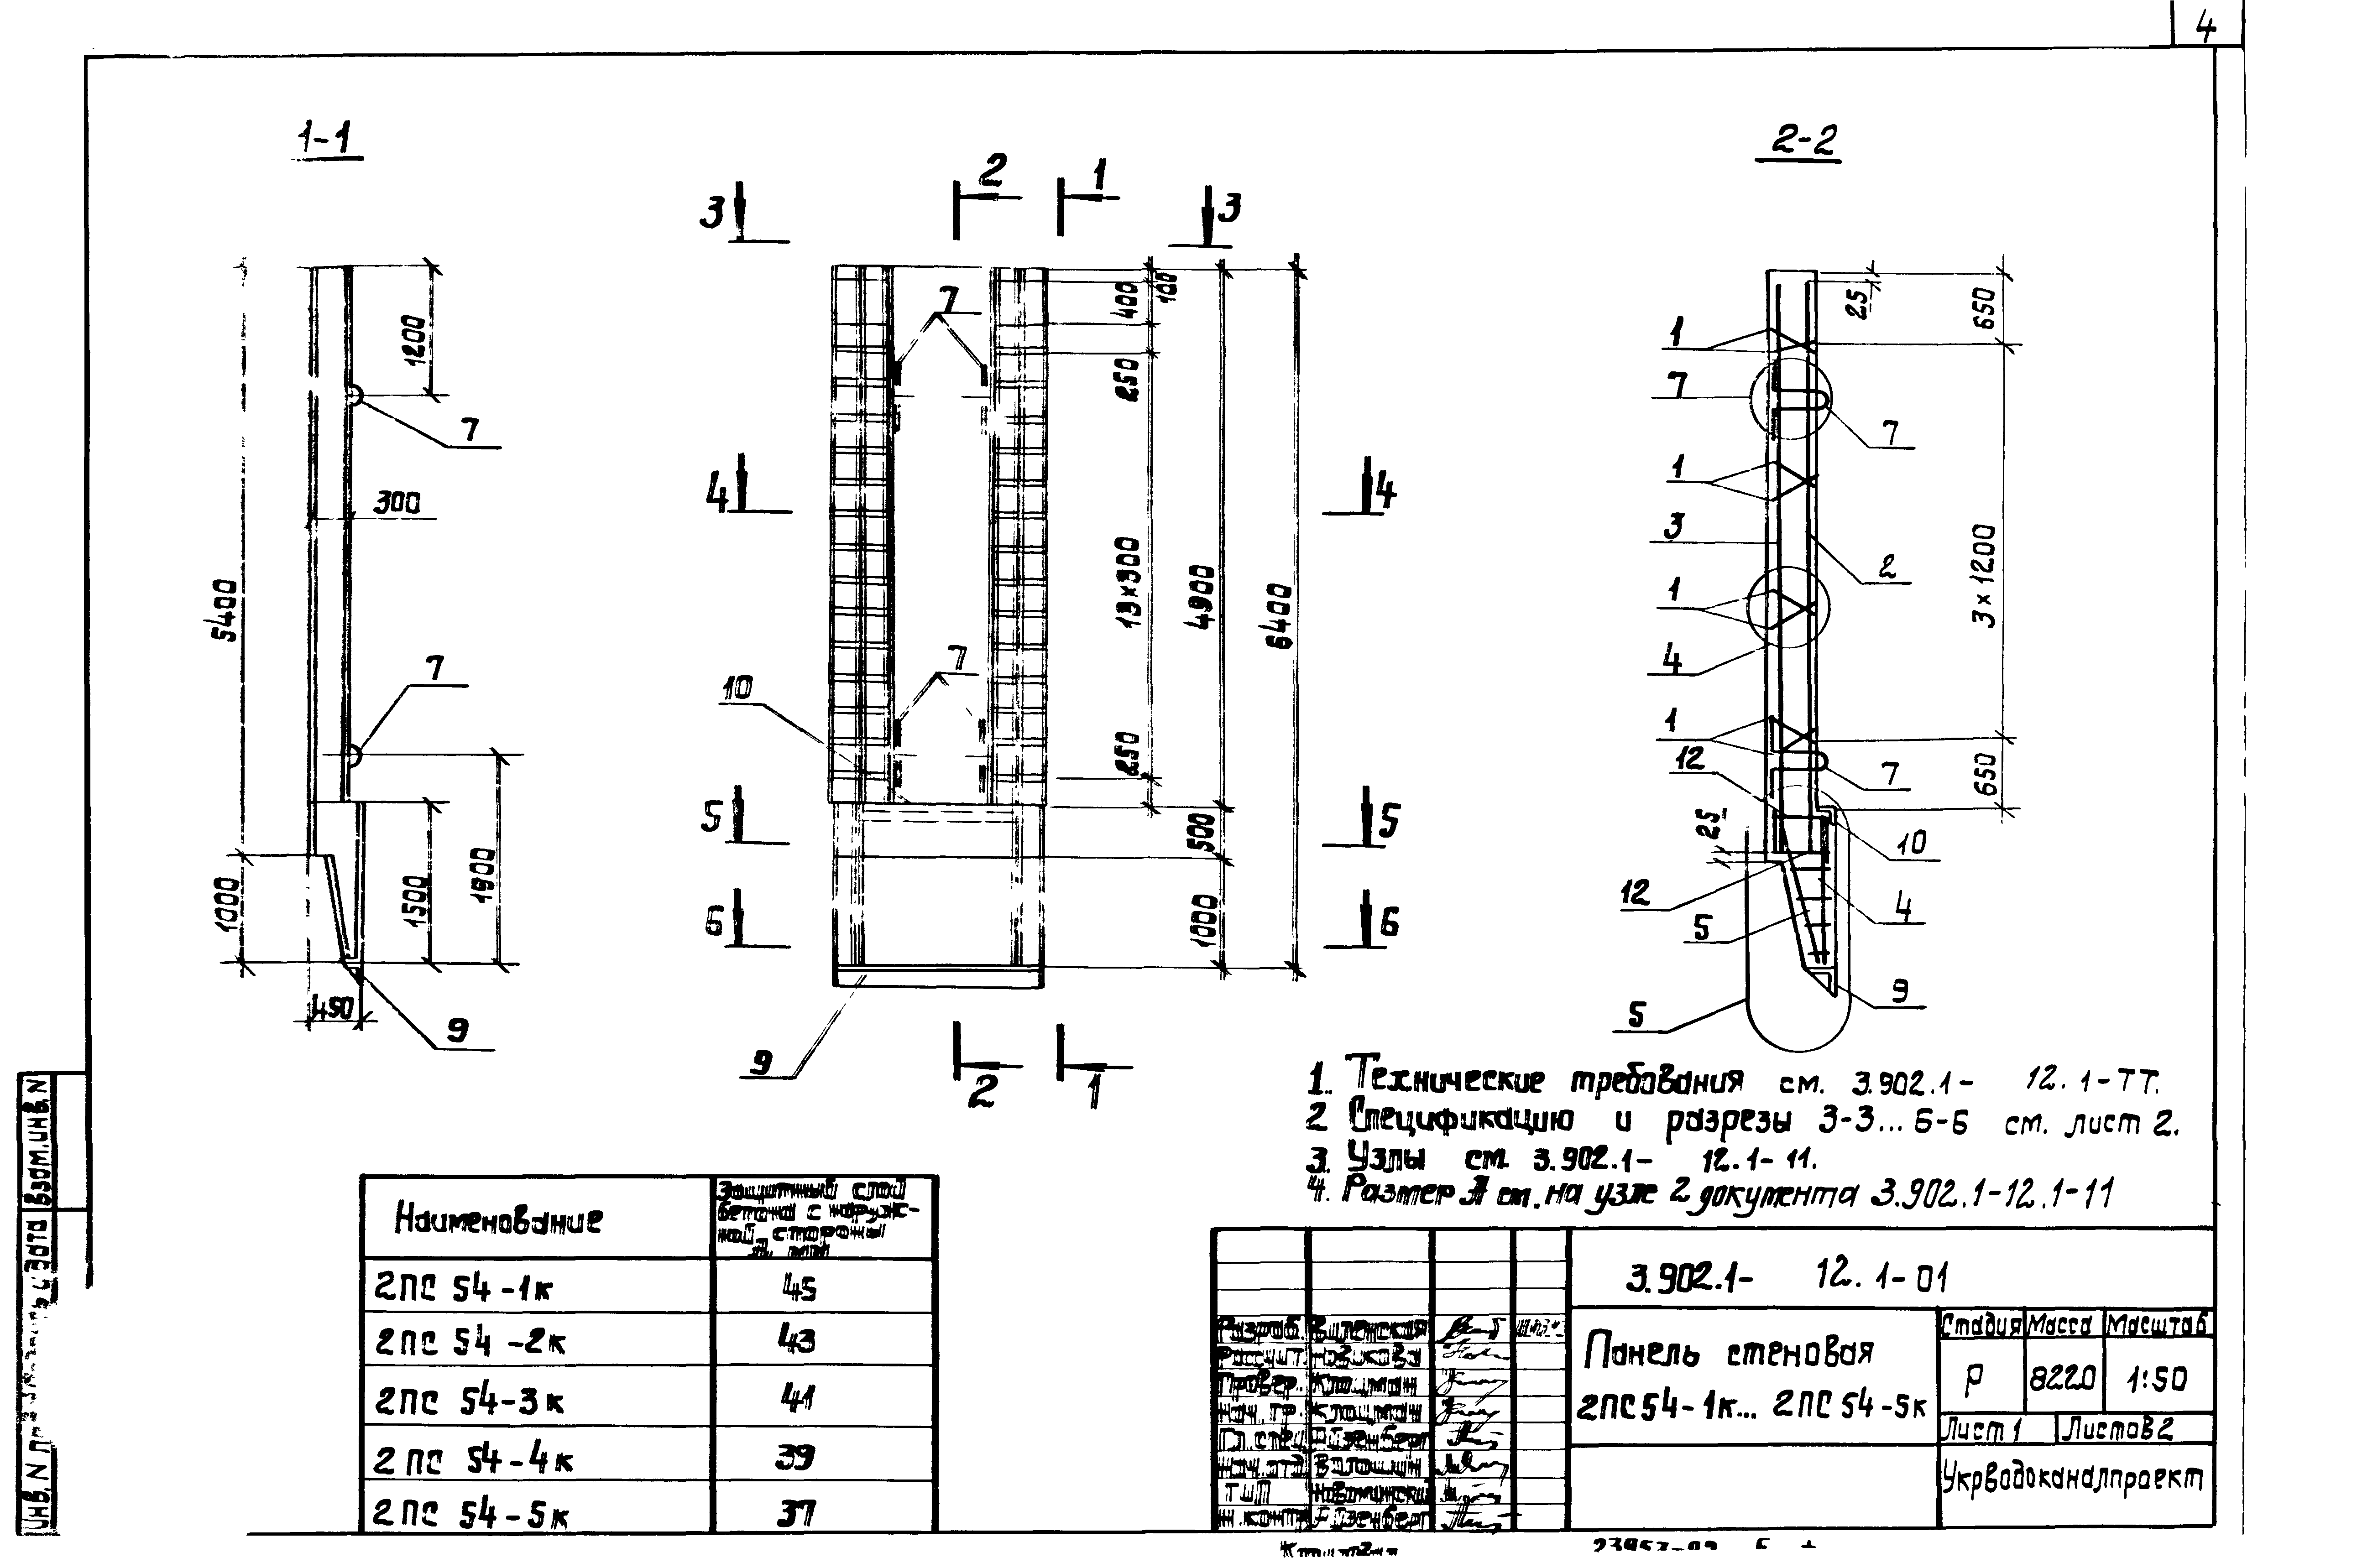 Панель стеновая 2ПС54-4к Серия 3.902.1-12, вып.1